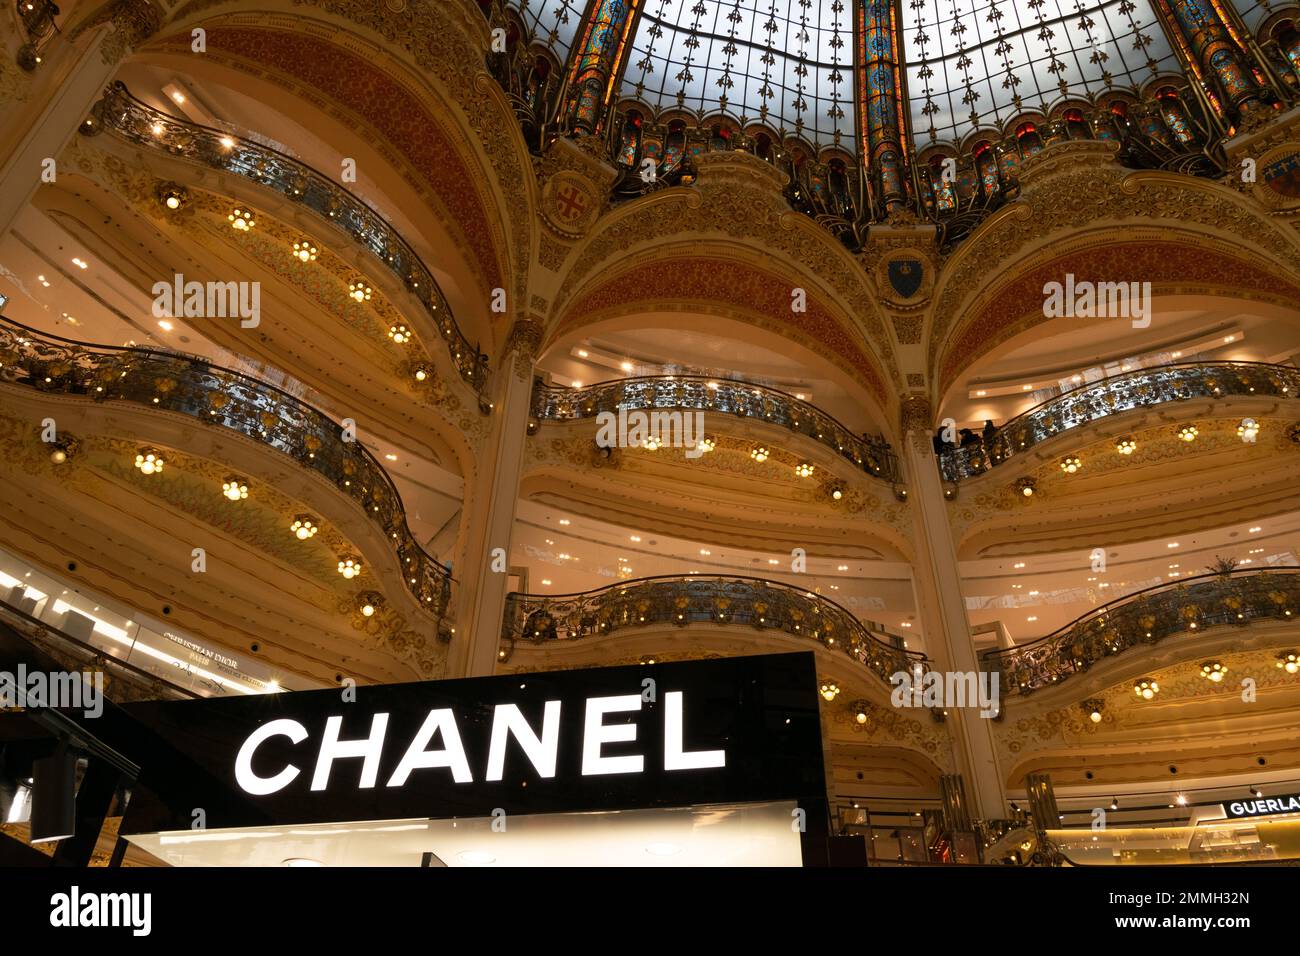 Die Galeries Lafayette ist eine gehobene französische Kaufhauskette, die größte in Europa. Das Flaggschiff befindet sich auf dem Boulevard Haussmann in Paris. Stockfoto